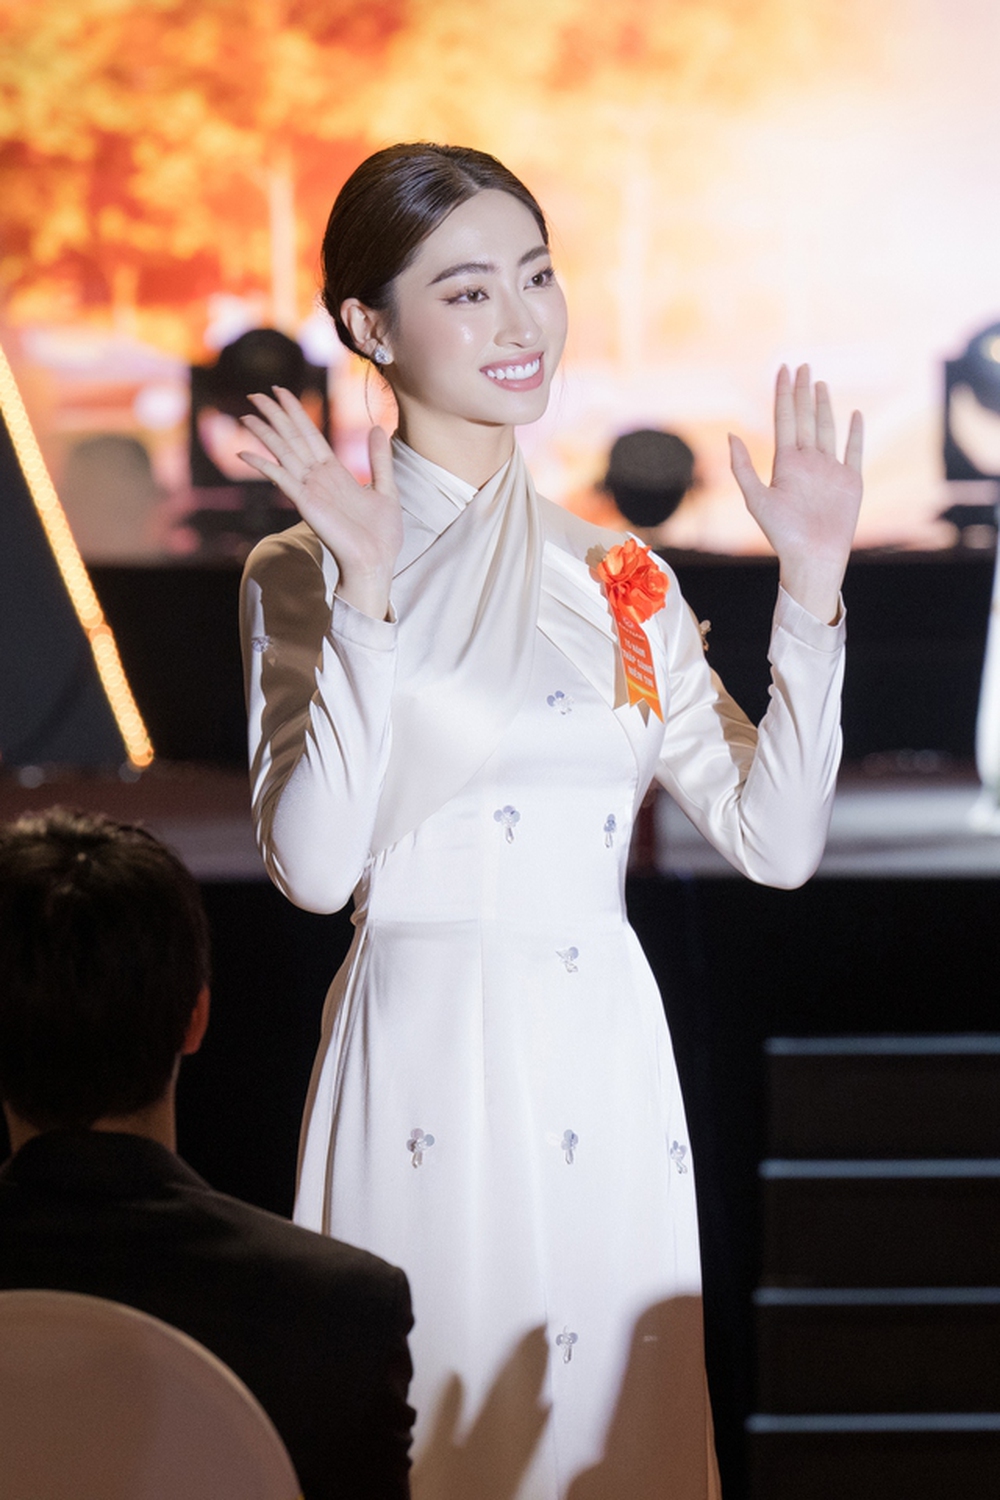 Hoa hậu Lương Thuỳ Linh nổi bật, làm 1 điều ý nghĩa trong ngày nhận chức giảng viên trợ giảng - Ảnh 4.